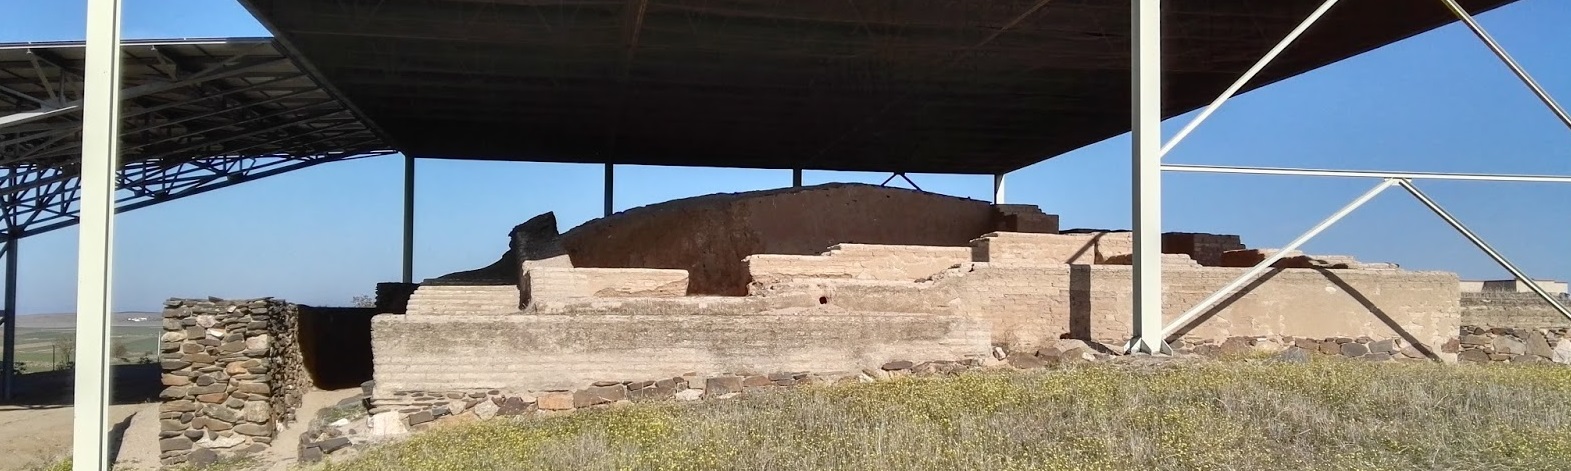 La vida en el edificio protohistórico de La Mata hace 2500 años (escenario de El secreto de Zalamea)